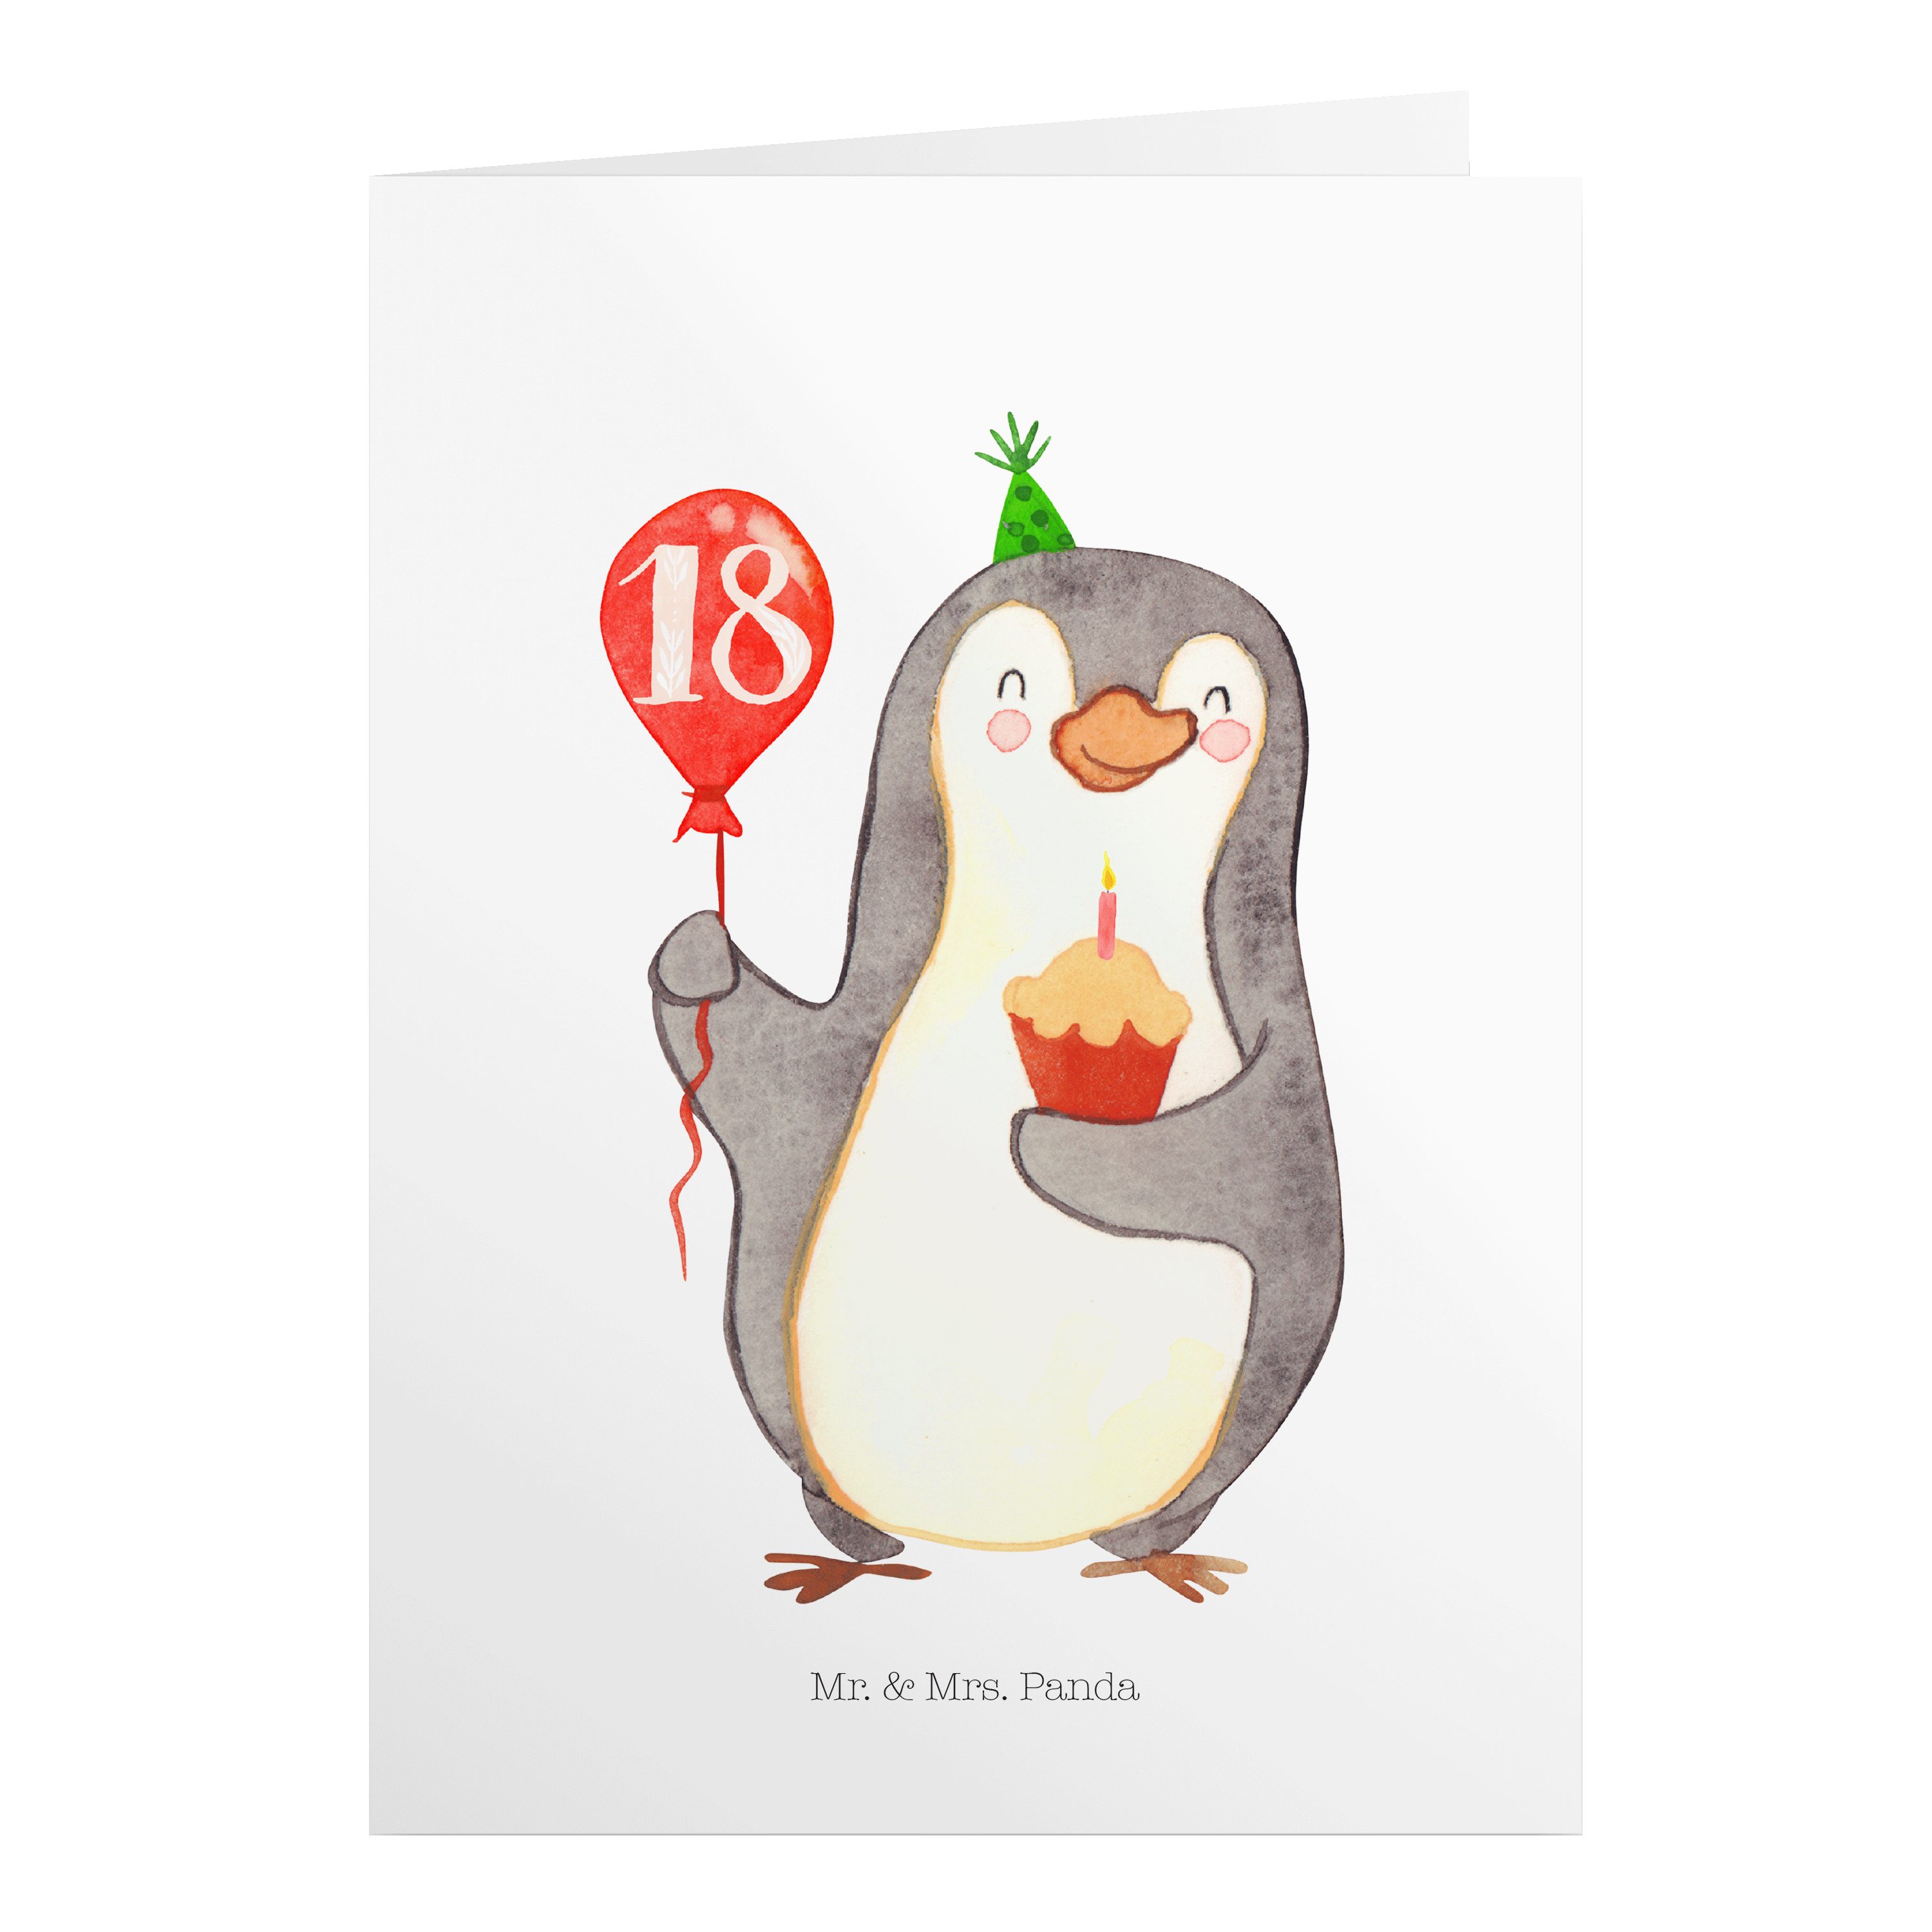 Mr. & Mrs. Panda Geburtstagskarten 18. Geburtstag Pinguin Luftballon - Weiß - Geschenk, Geburtstagsgesch